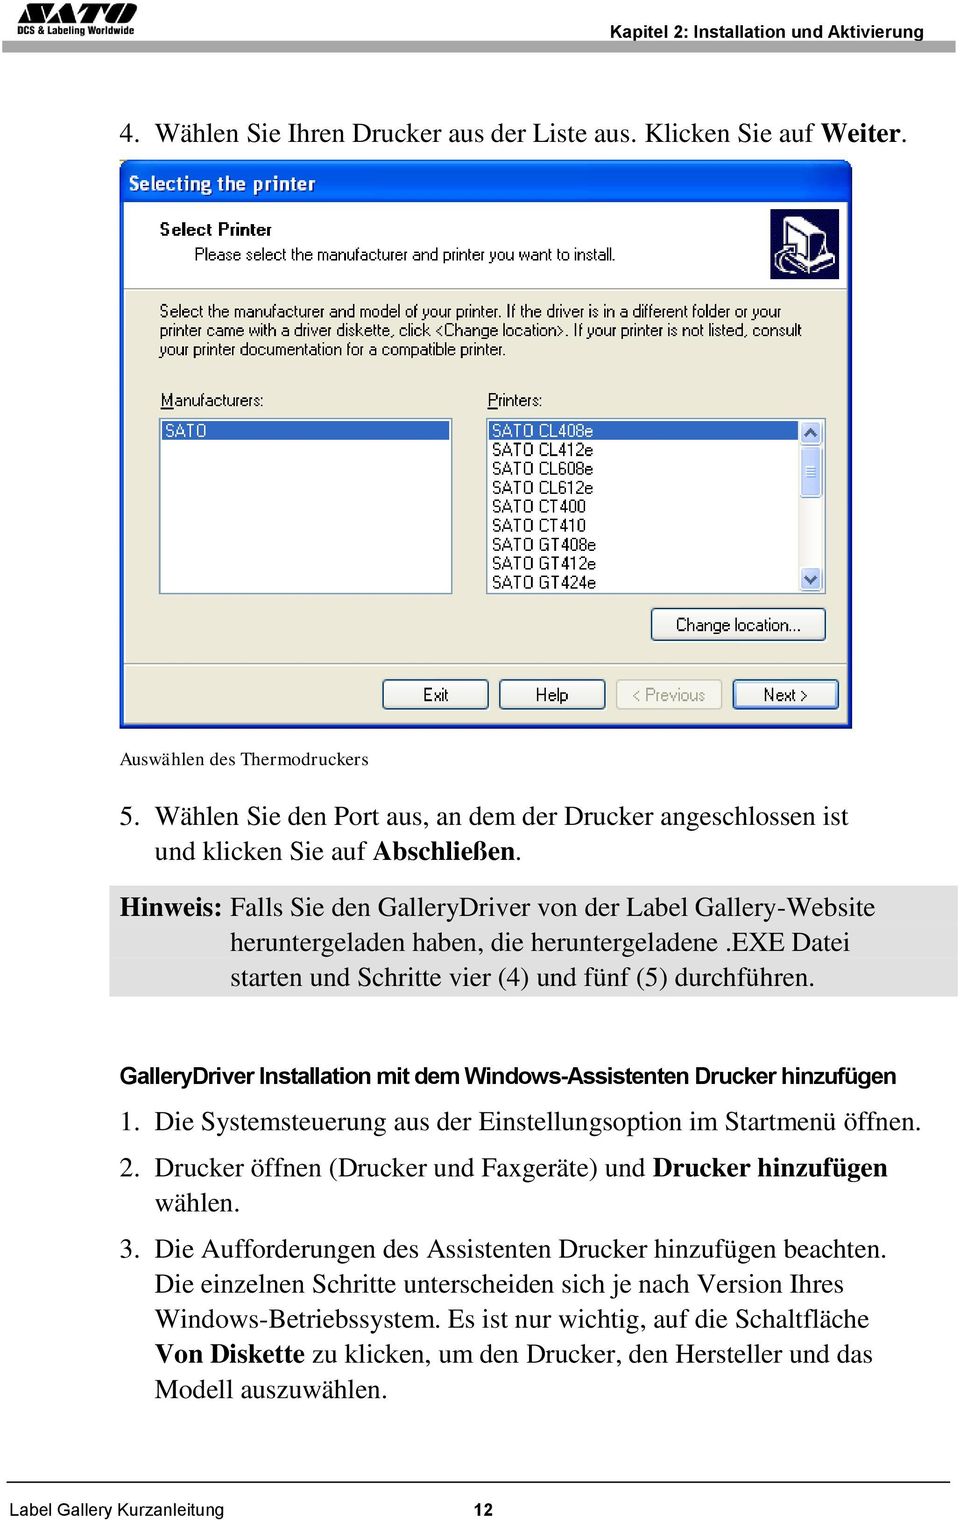 Hinweis: Falls Sie den GalleryDriver von der Label Gallery-Website heruntergeladen haben, die heruntergeladene.exe Datei starten und Schritte vier (4) und fünf (5) durchführen.